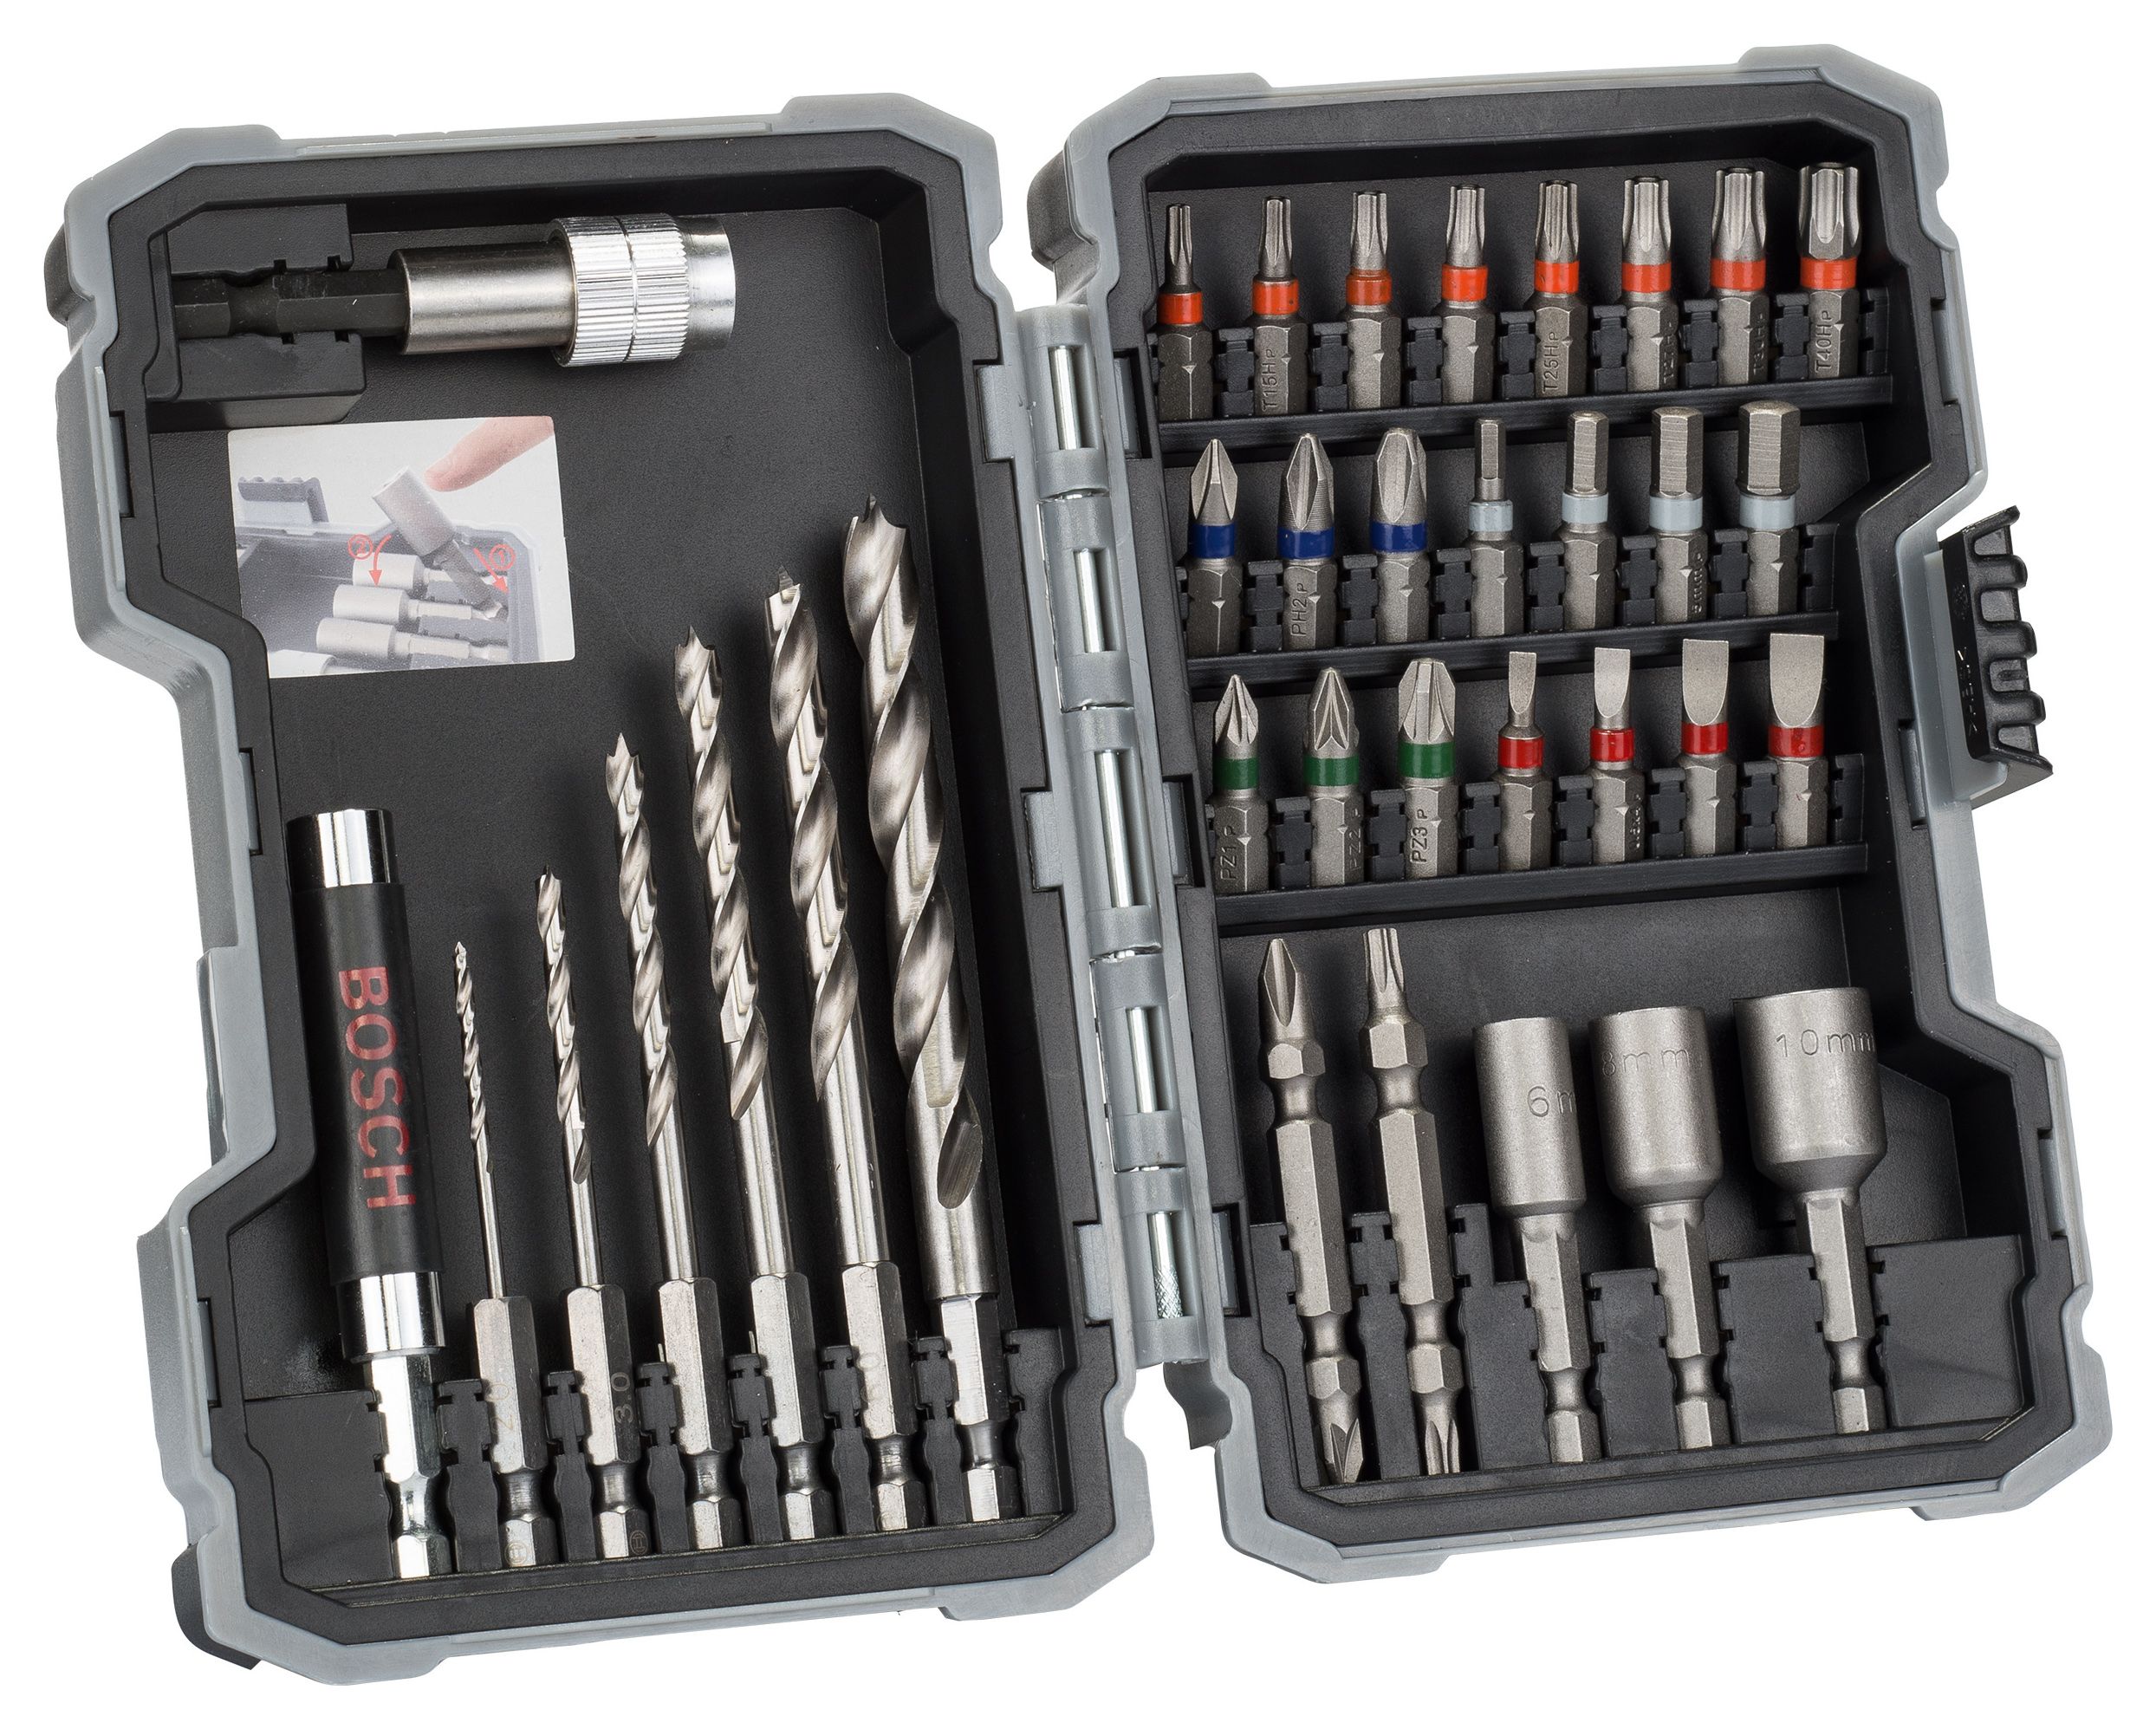 Bosch 2607017327 35 Piece Pro Mixed Wood Drill & Screwdriver Bit Set